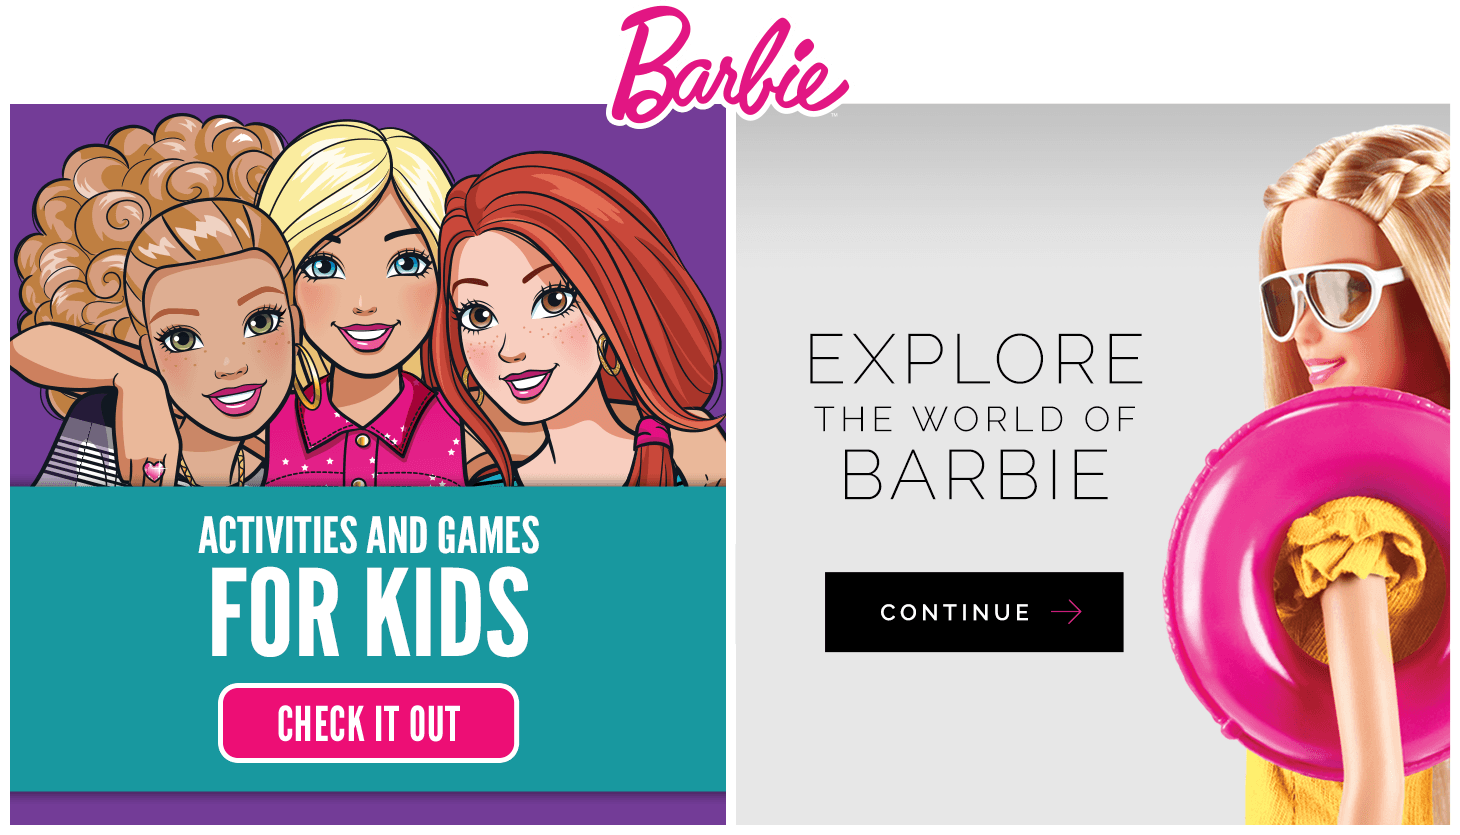 Barbie.com Logo - About Barbie. Inspiring Girls Since 1959